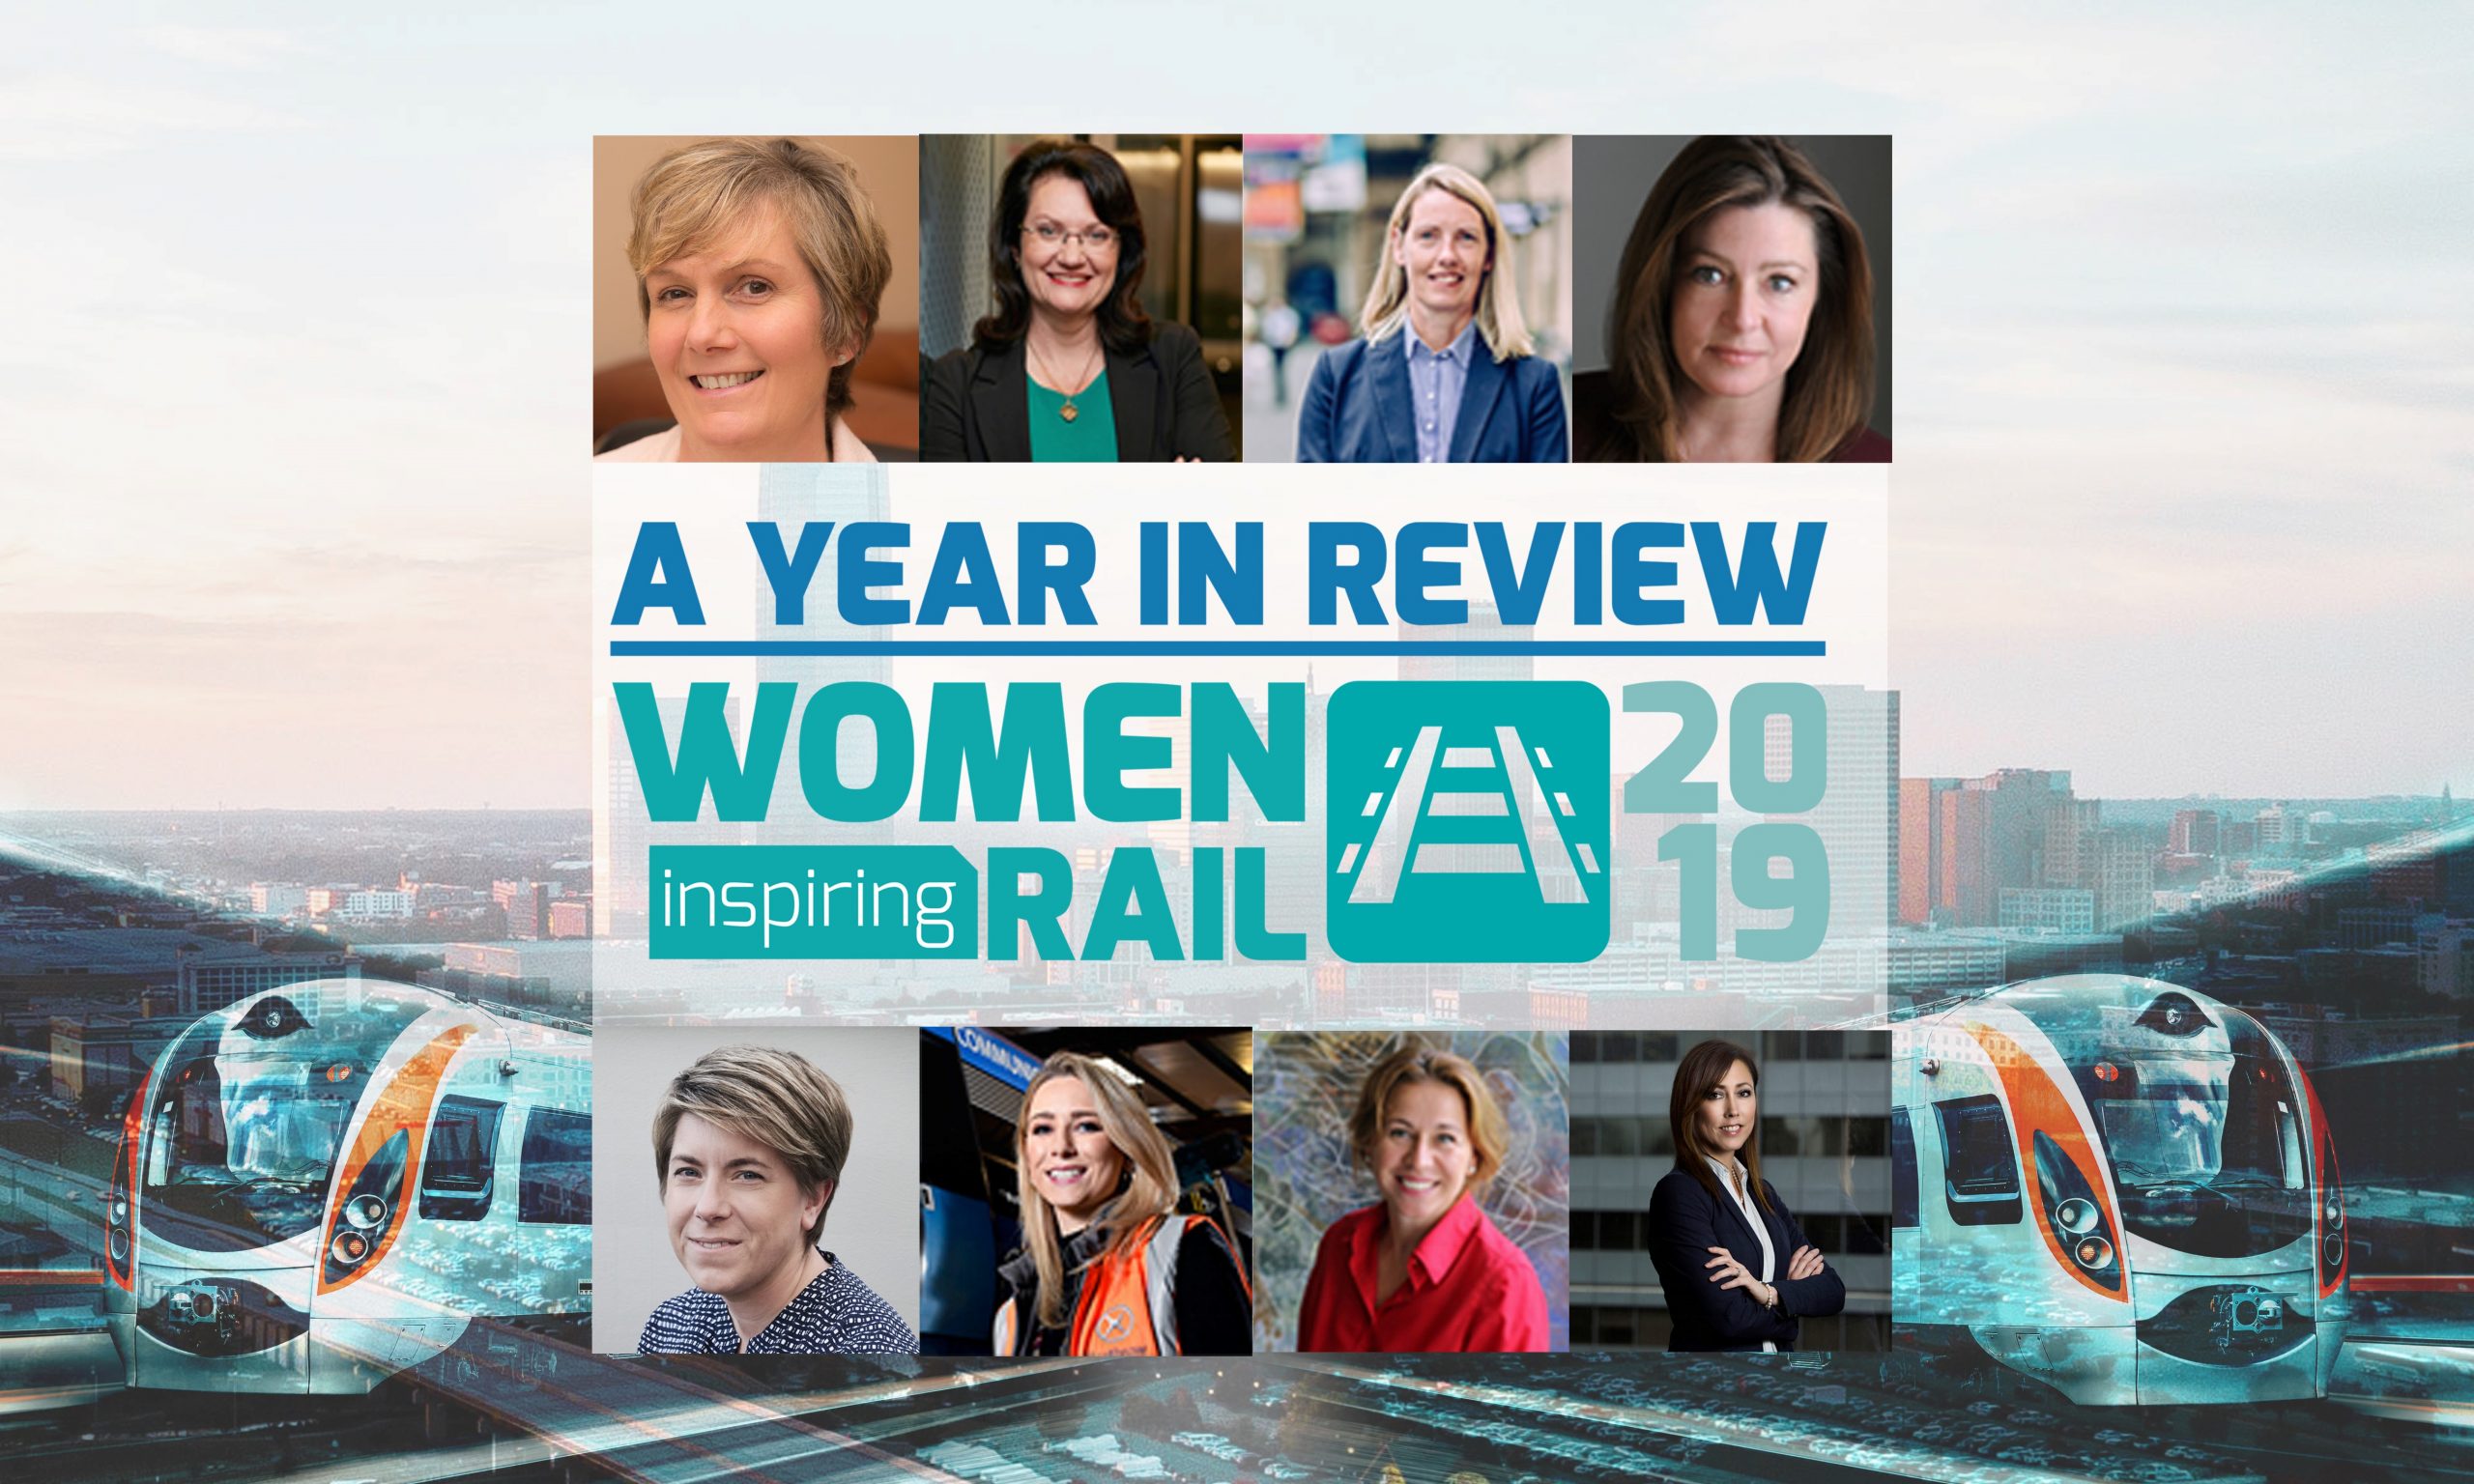 女性鼓舞人心的铁路:回顾一年